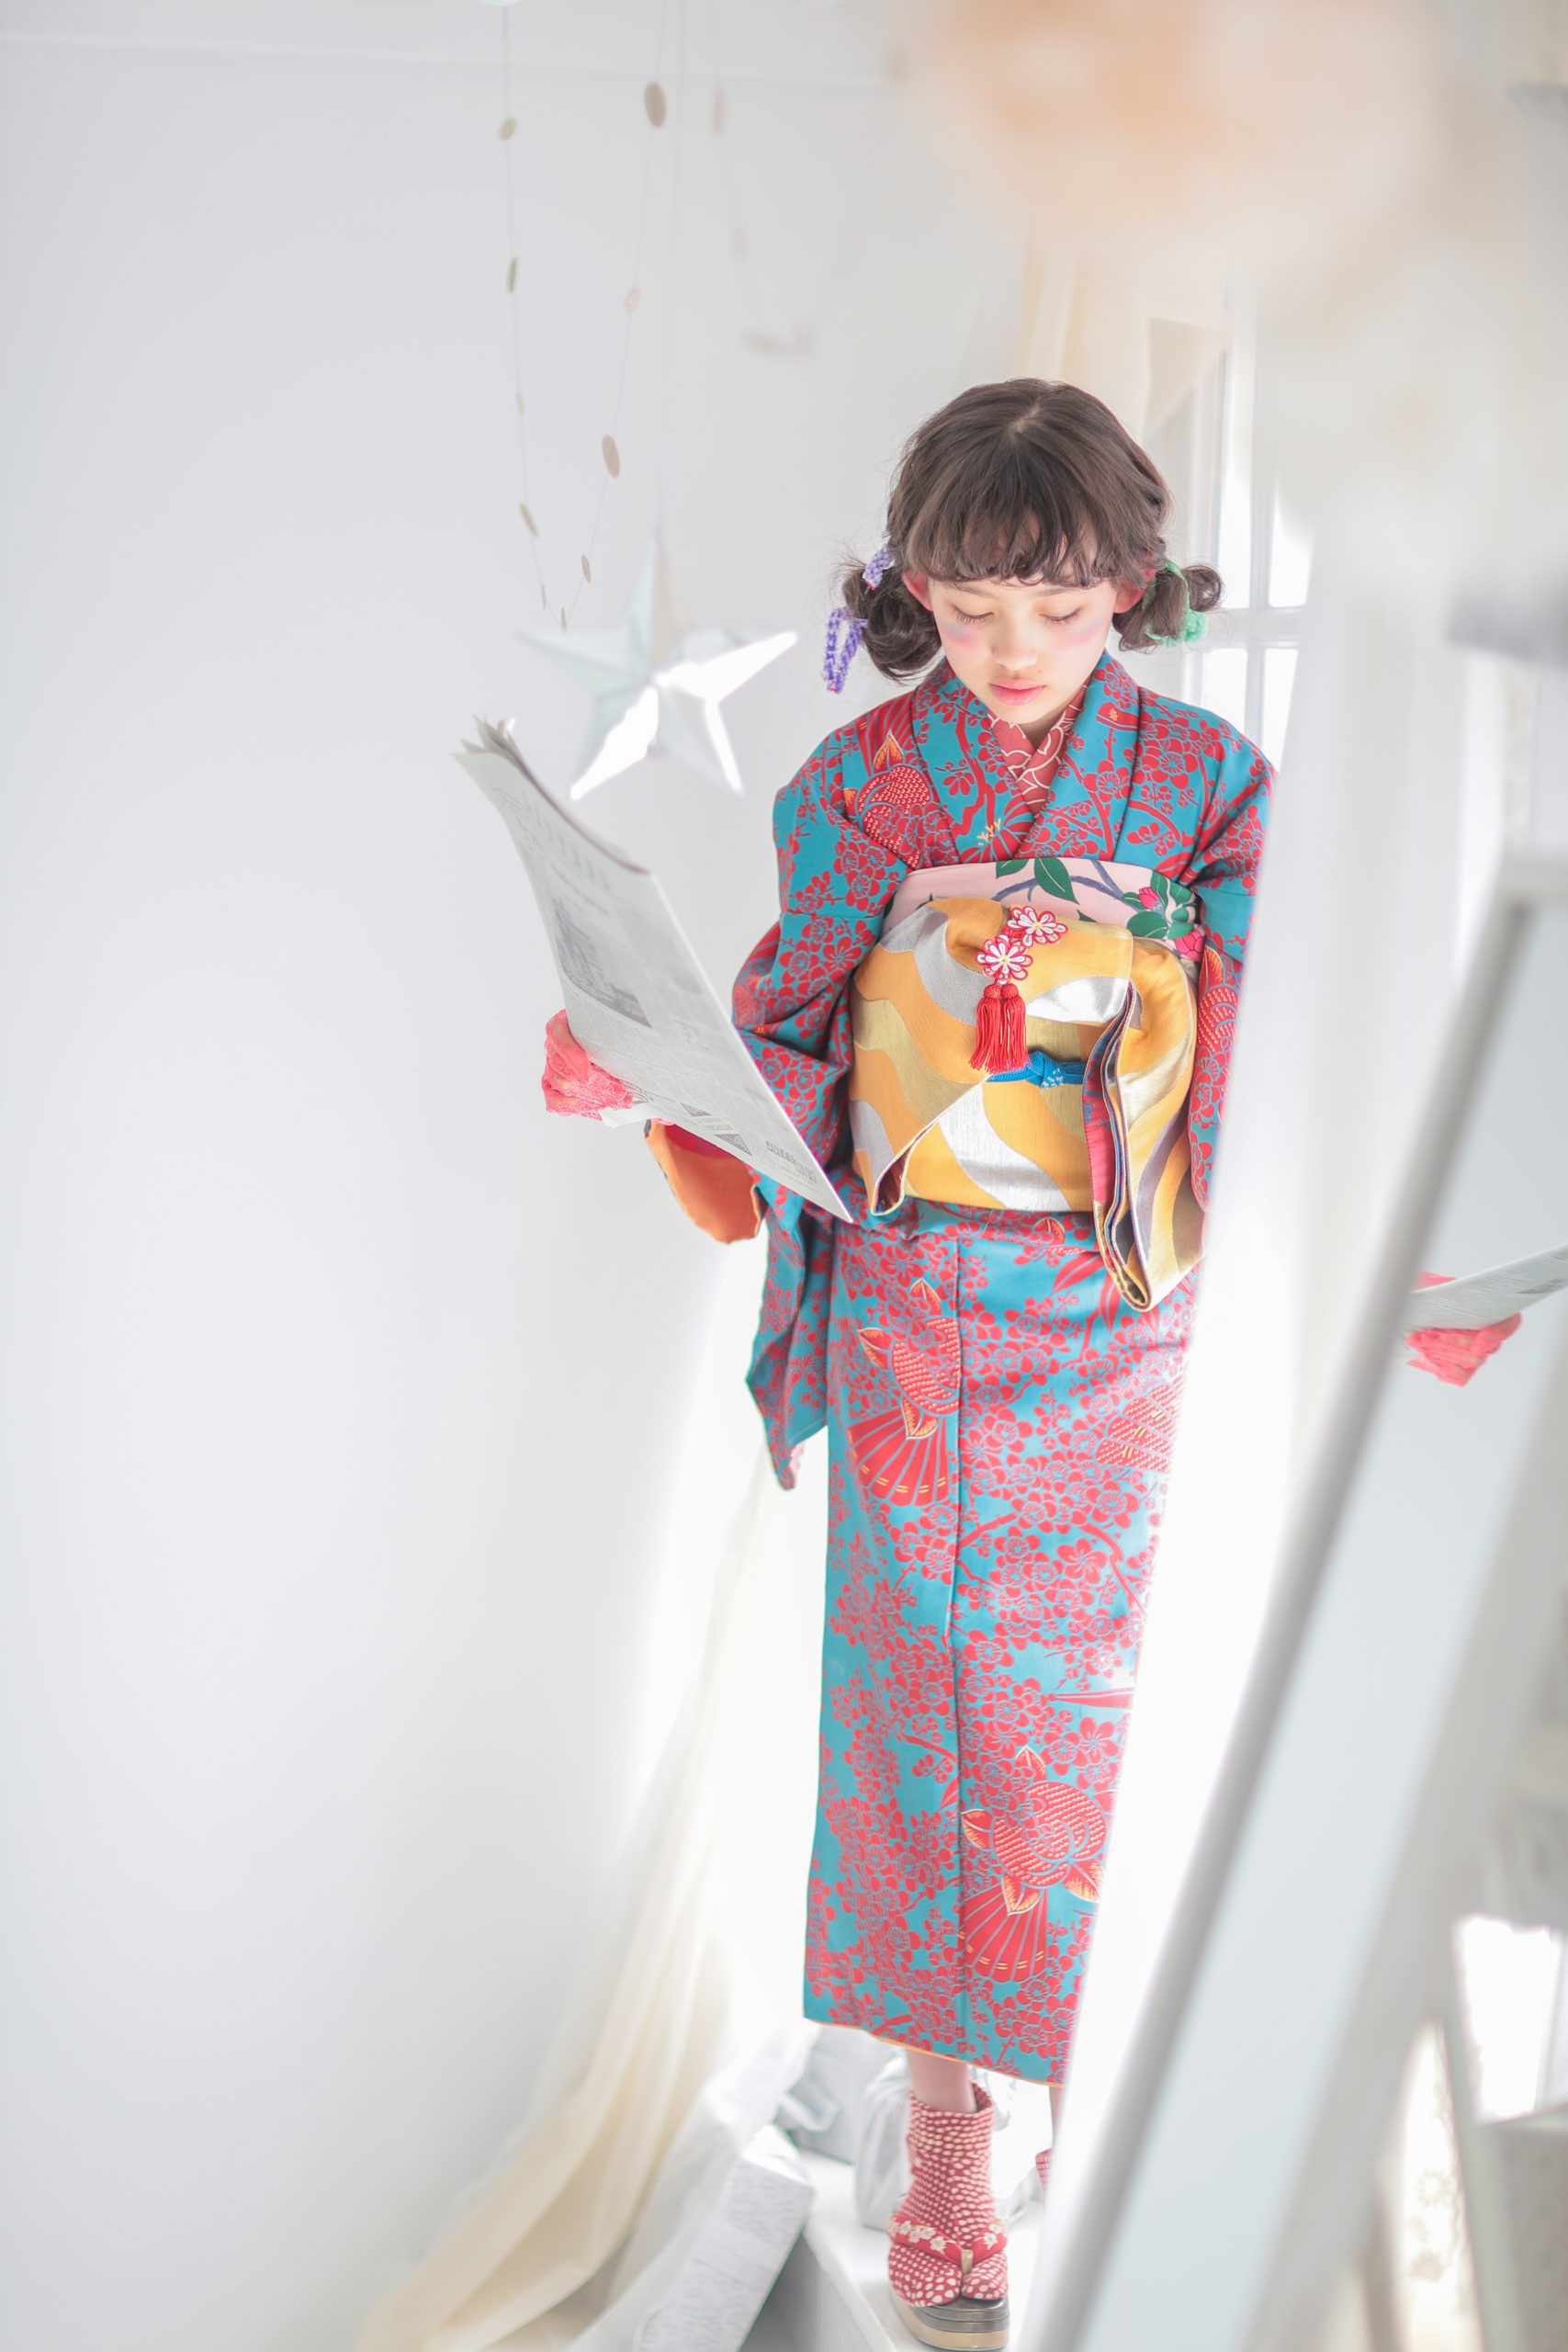 ハーフ成人式は着物を着よう 十歳ととせのお祝い 名古屋の写真スタジオ ノーブレム